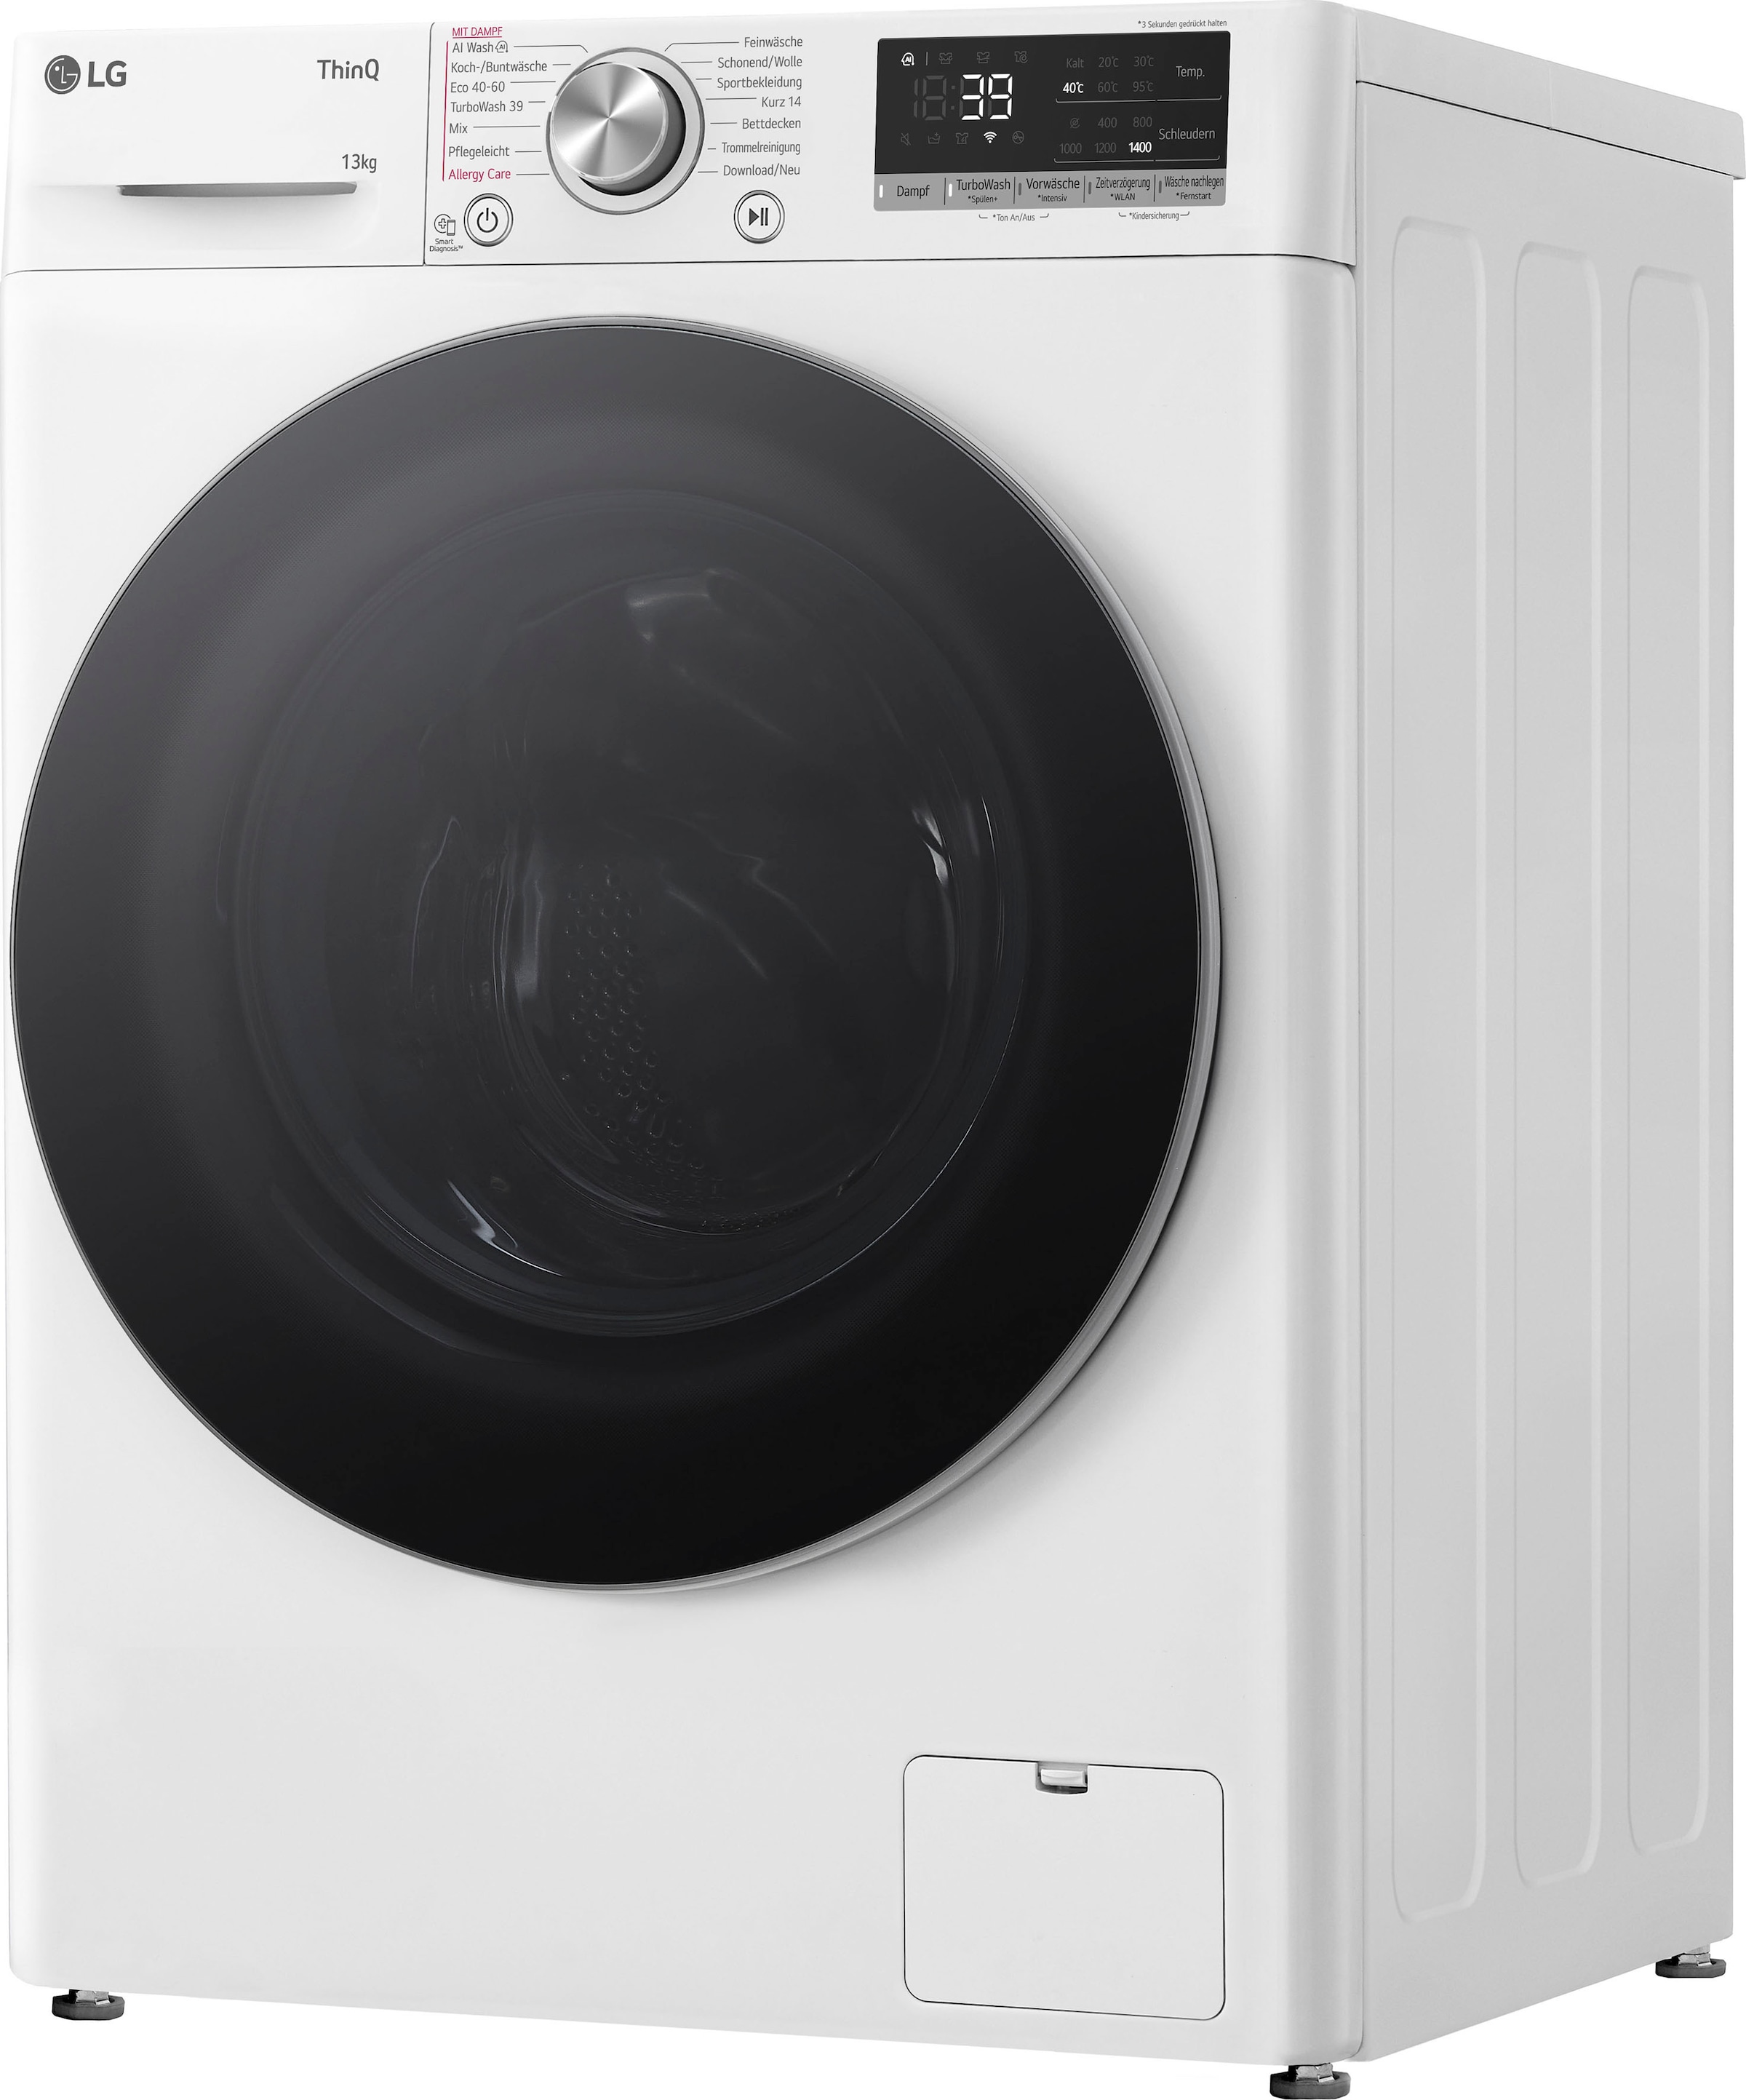 1400 7, 13 Serie Online Waschmaschine LG kg, OTTO »F4WR7031«, im F4WR7031, Shop U/min